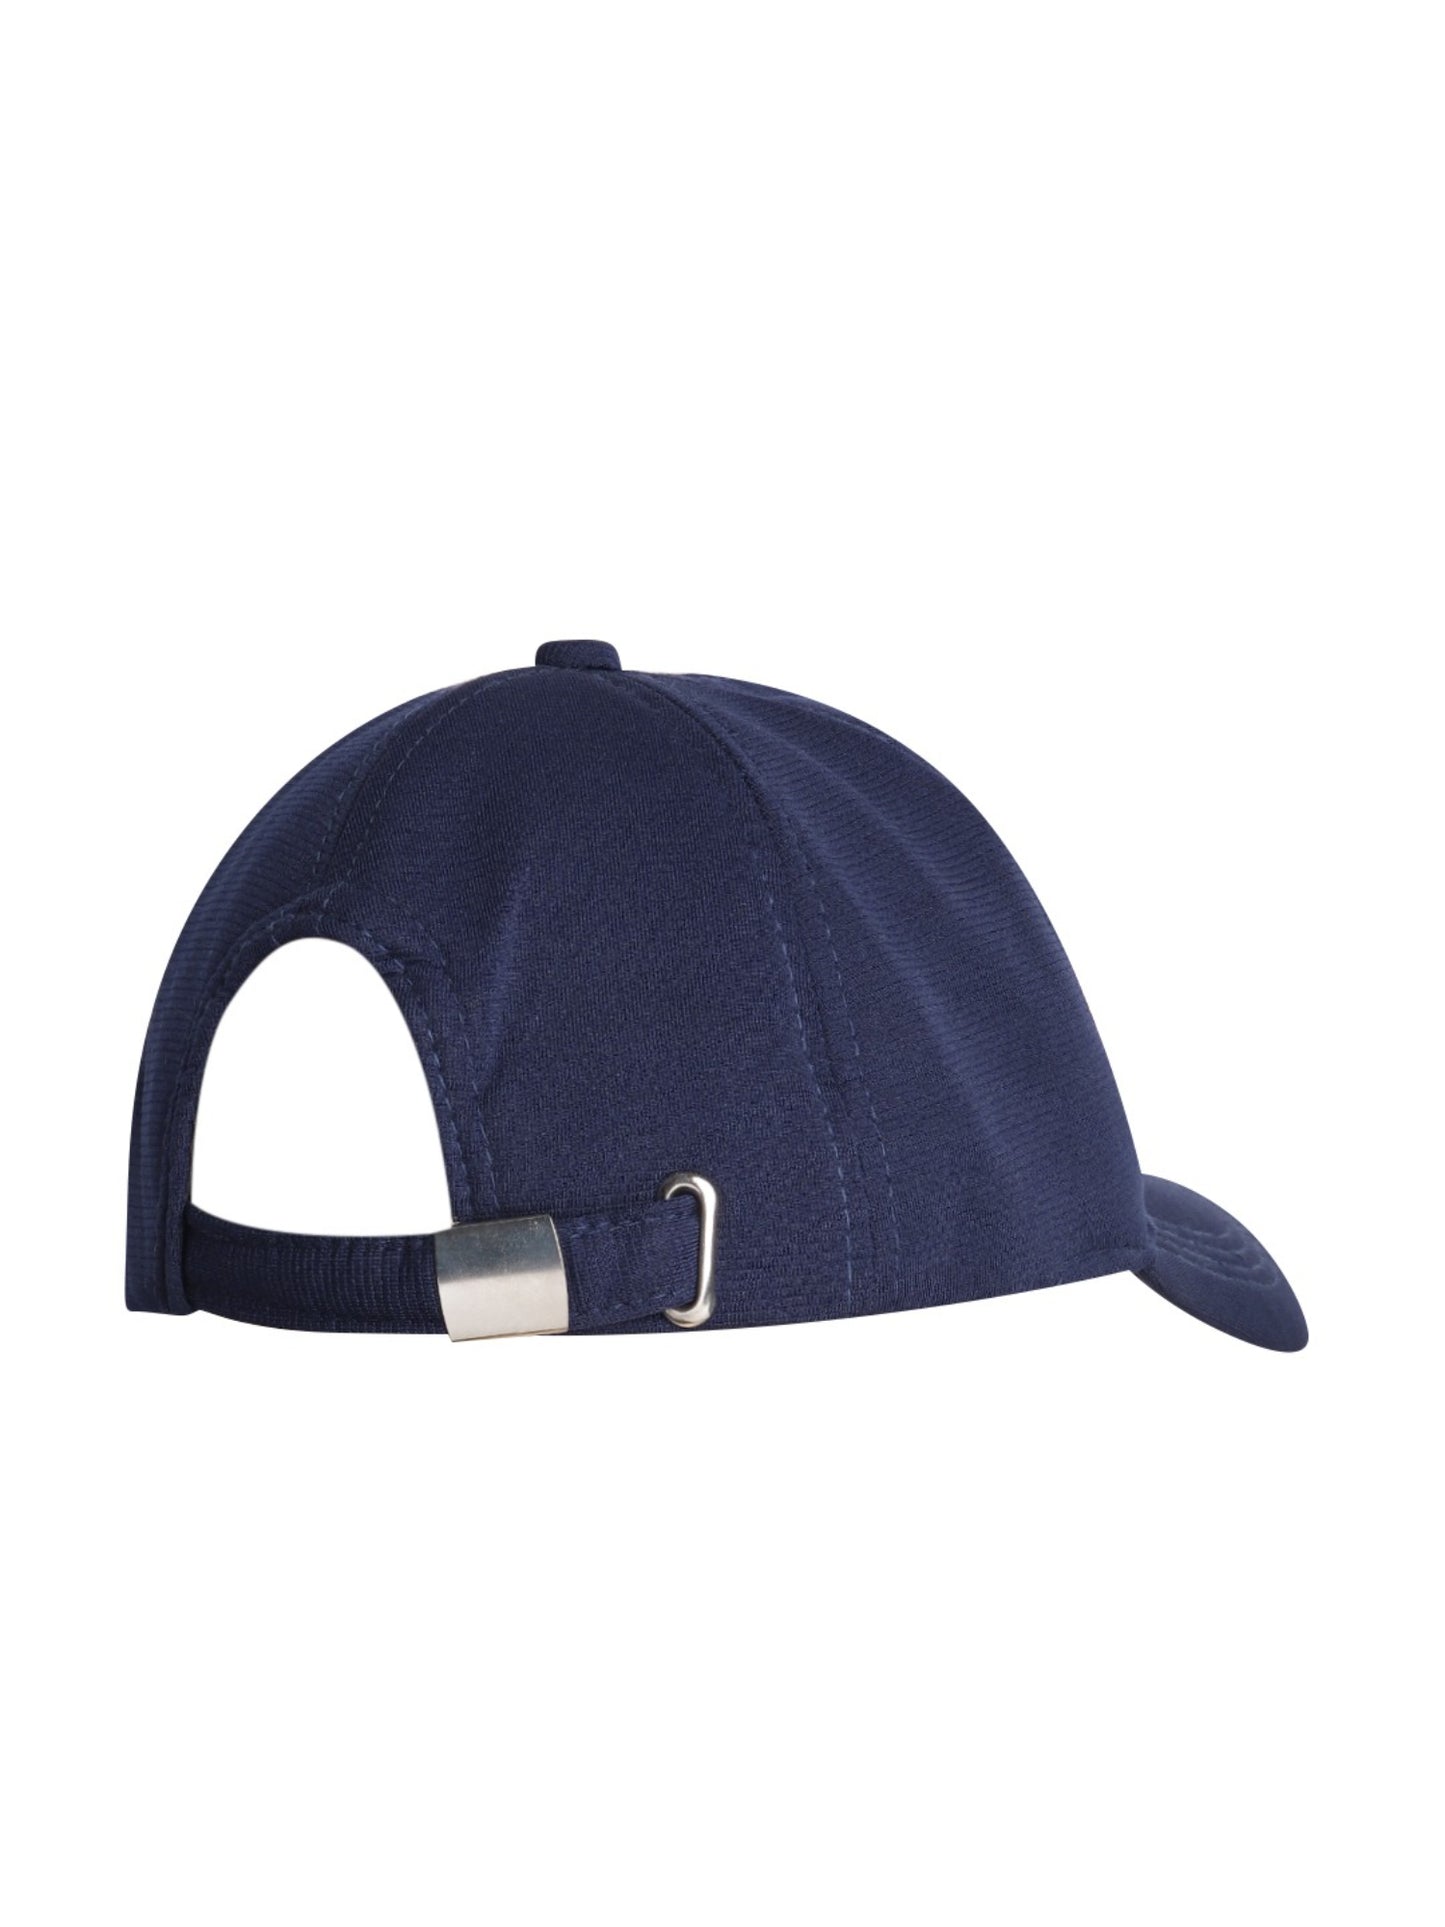 Blueberry navy blue flexi baseball cap